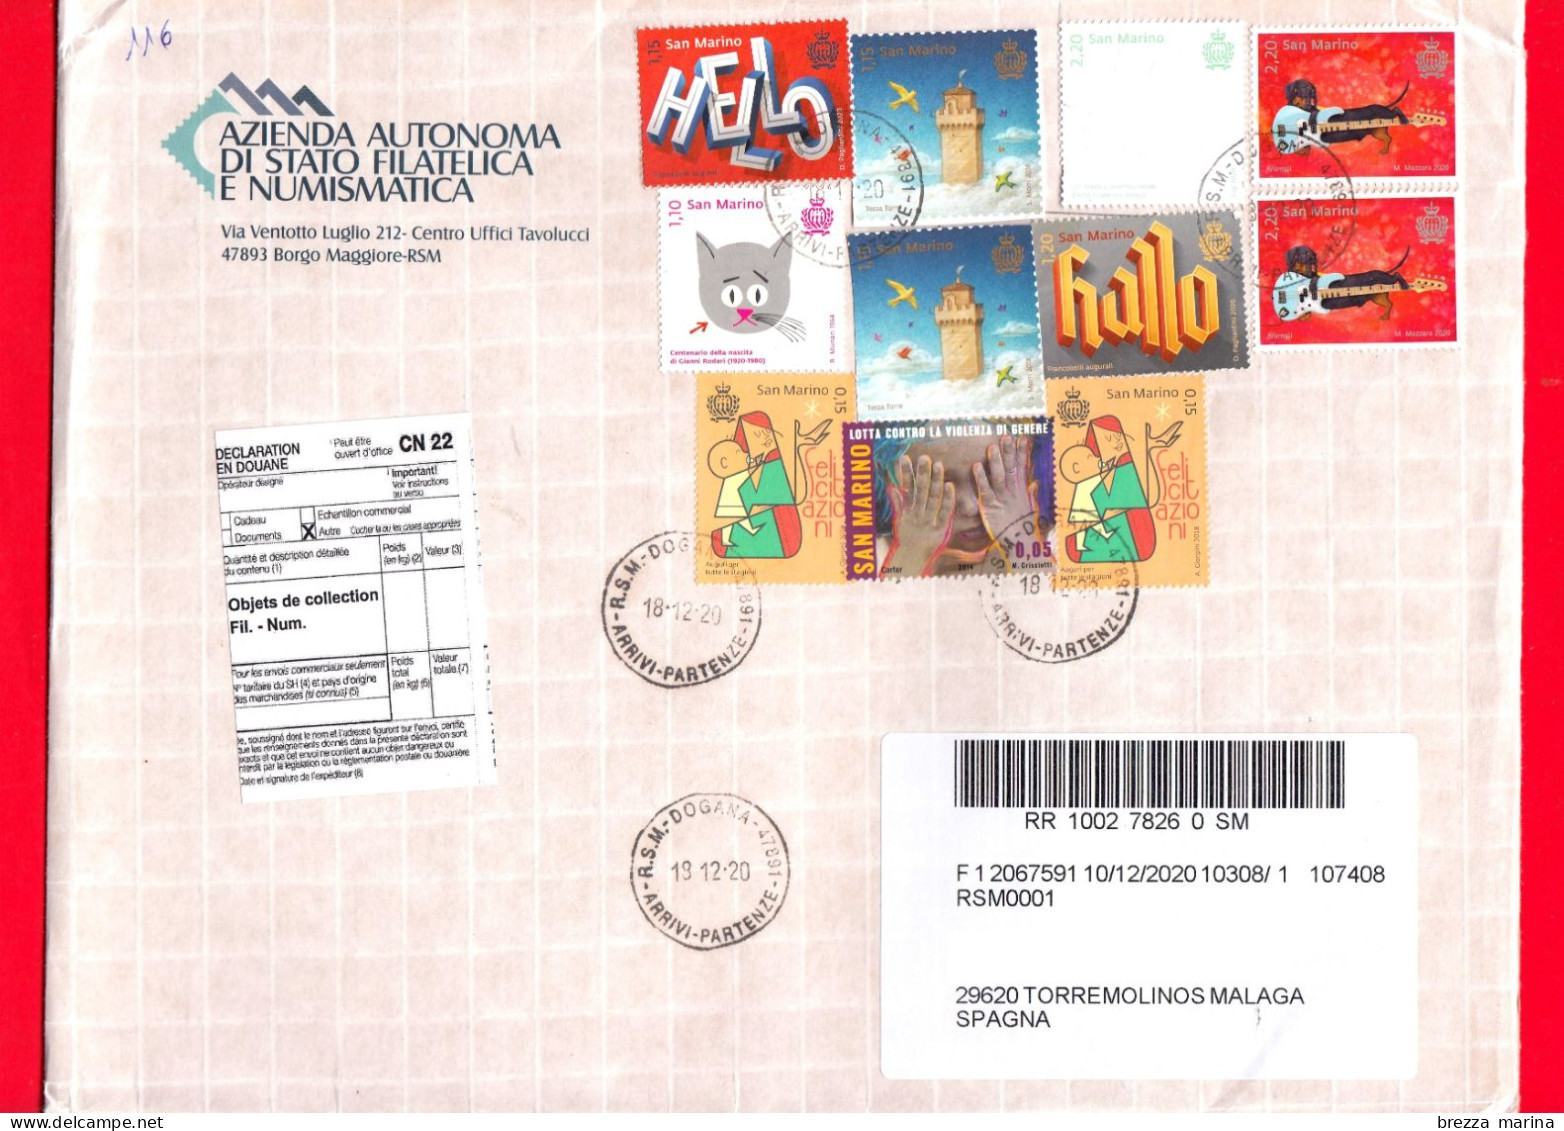 SAN MARINO - Storia Postale - Busta Del 2020 - ( 2020 - Cane, 2.20 - Stella Alpina, 2.20 - Hallo. 1.20 ... ) - Lettres & Documents